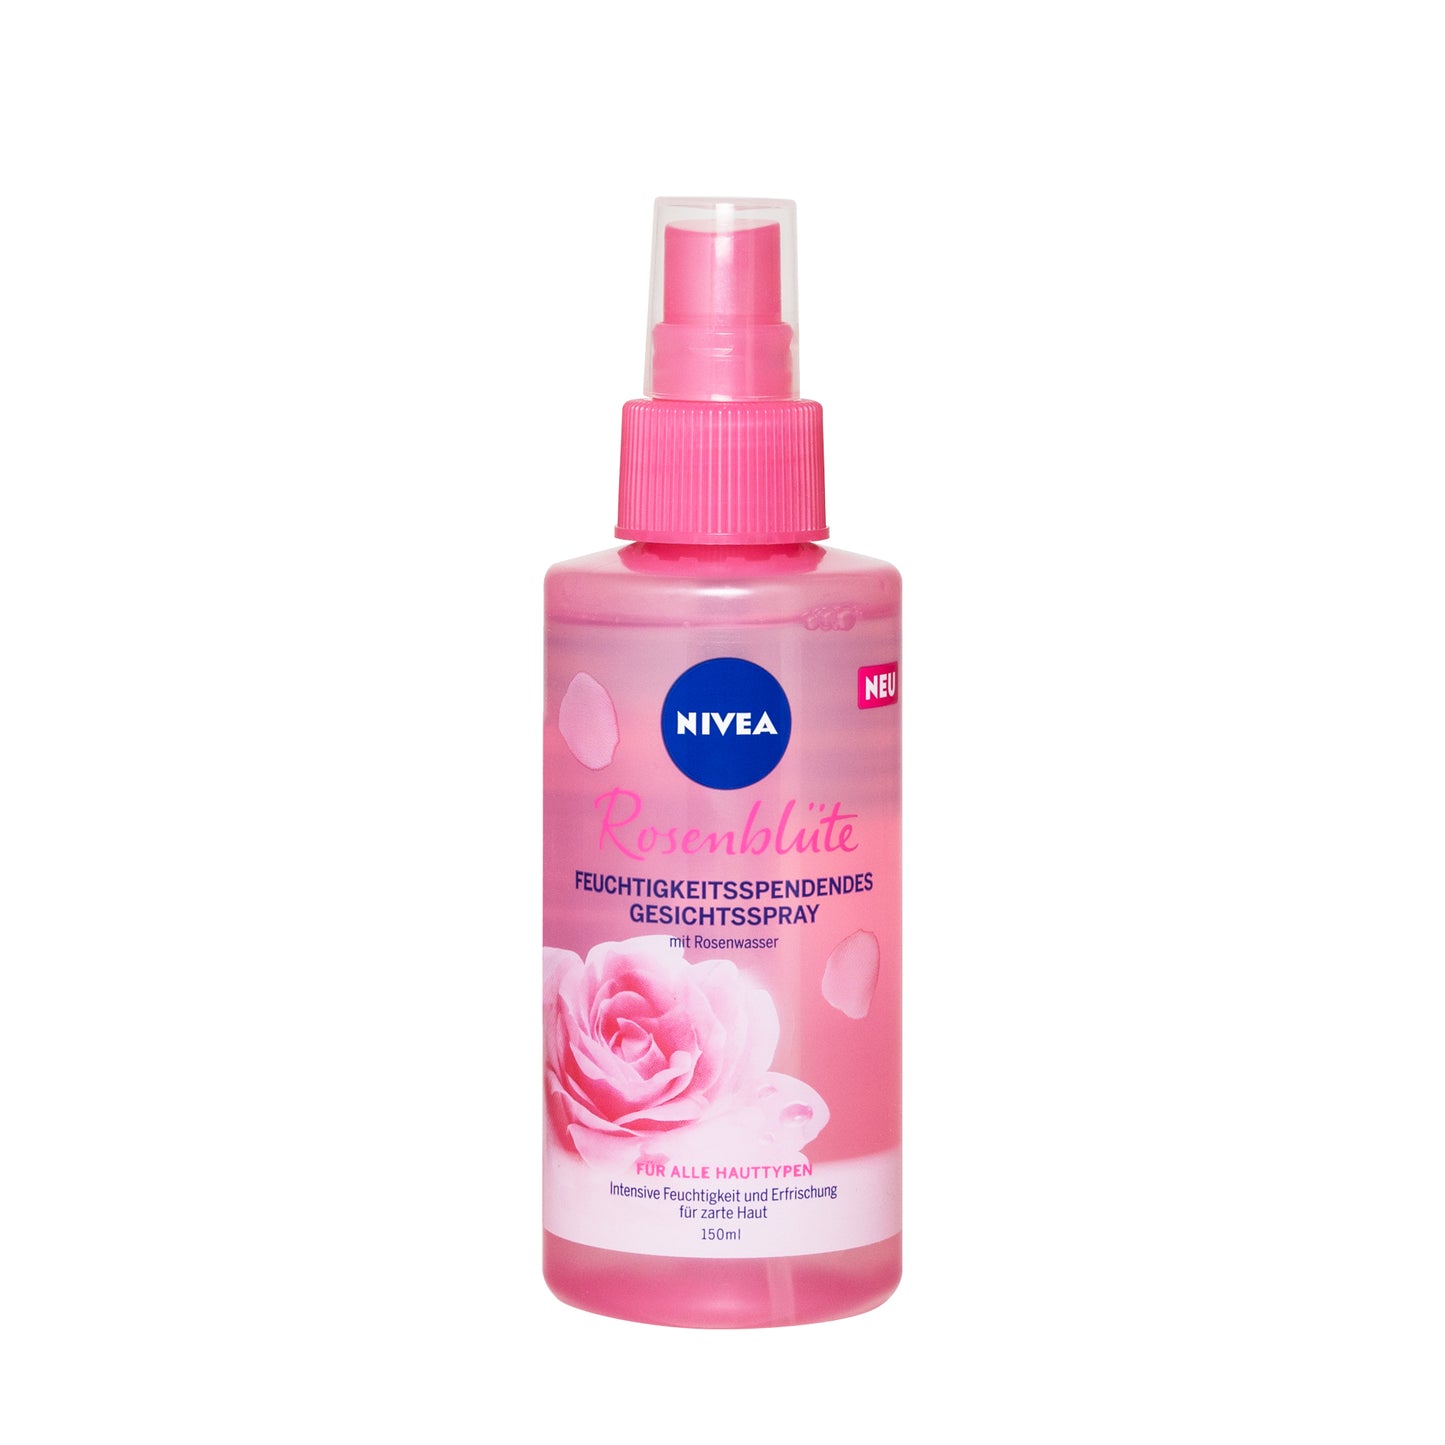 Primary image of Rose Blossom Facial Spray